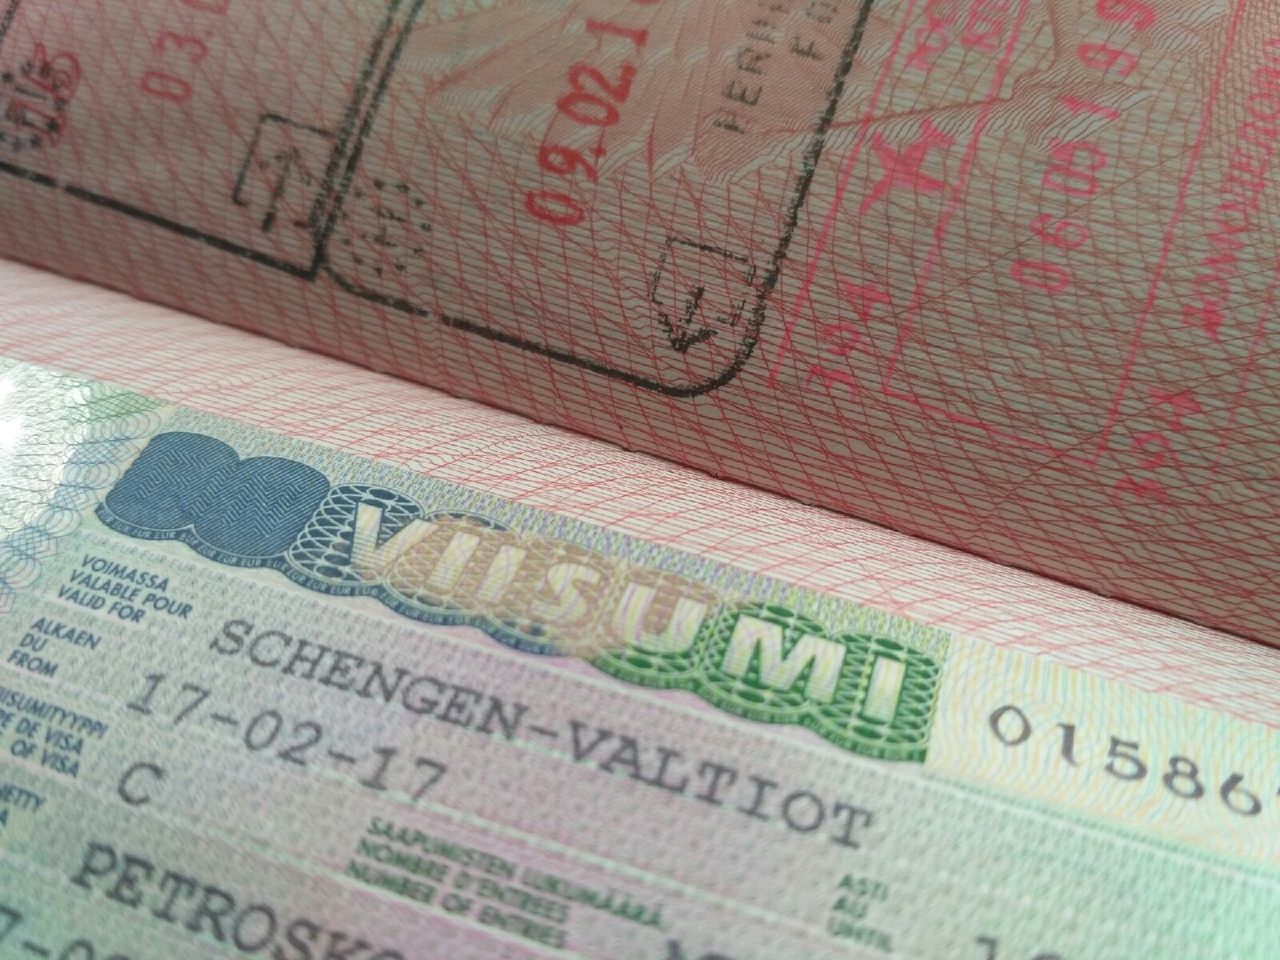 Viisumikeskus on avoinna maanantaisin ja keskiviikkoisin kello 9–14 välisenä aikana. Petroskoissa tehdyt viisumipäätökset toimitetaan asiakkaille maksullisella kuriiripalvelulla. Kuva: Margarita Pehkonen